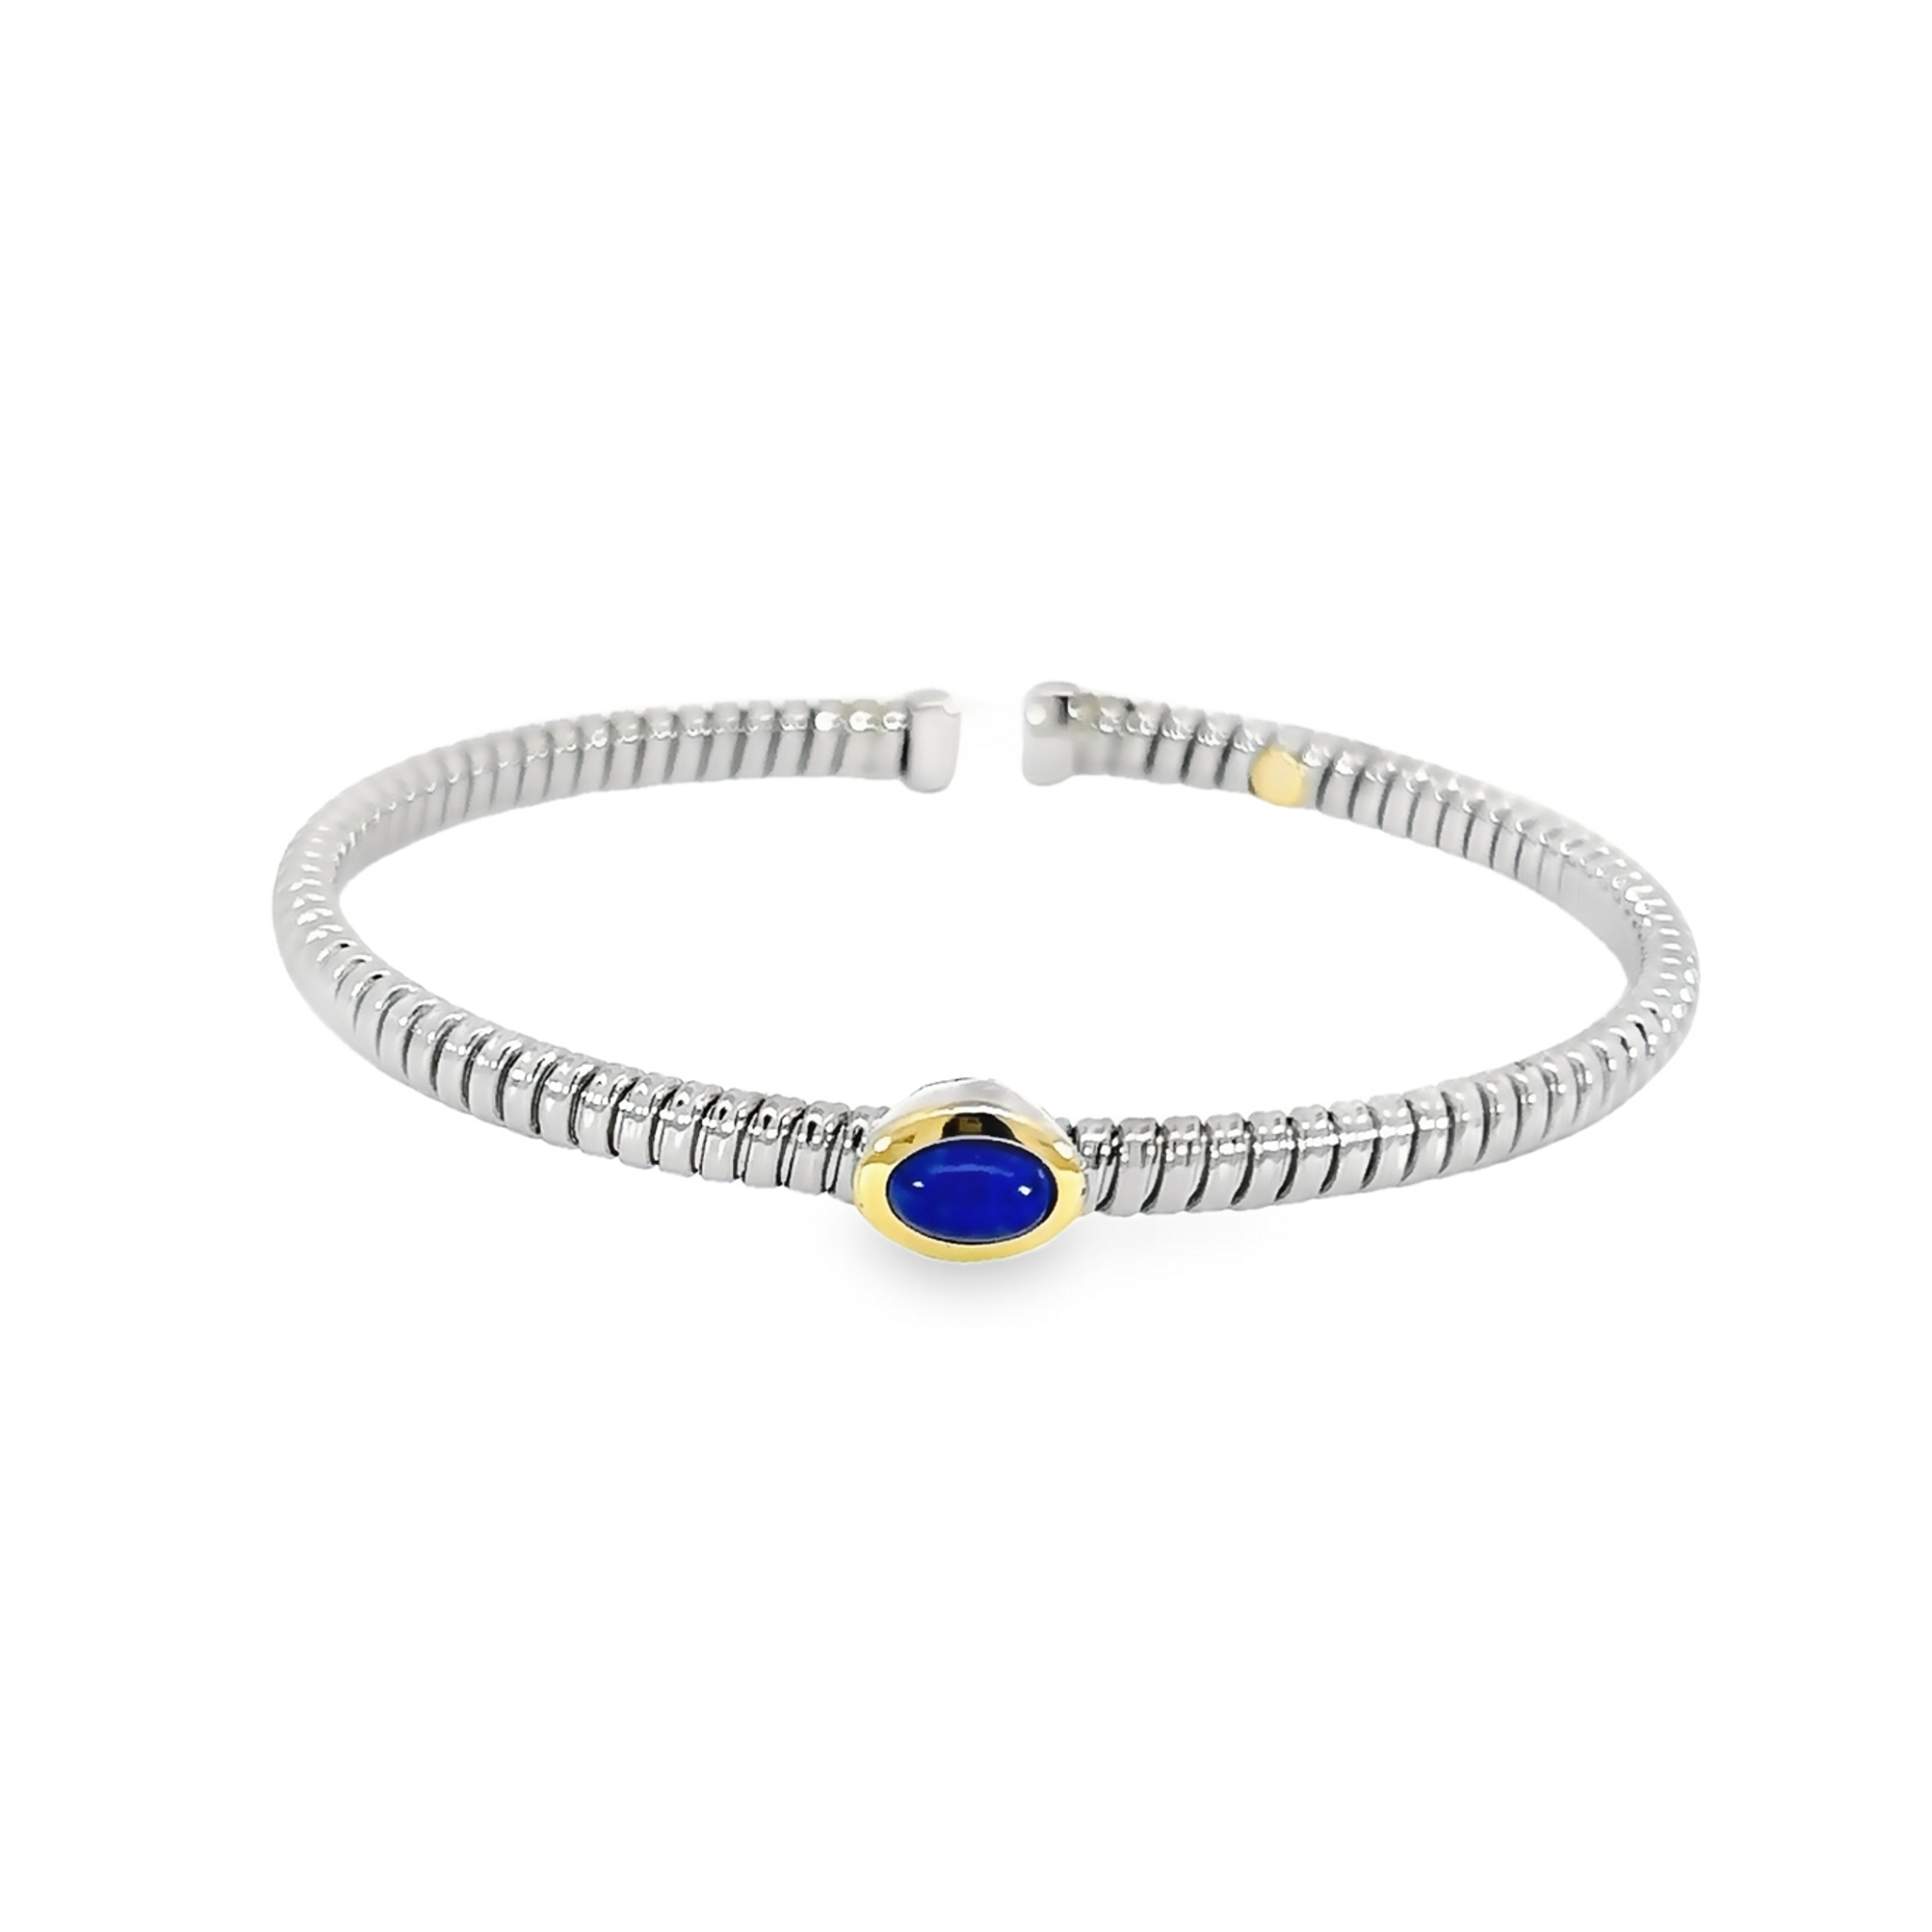 Stainless Steel Blue Lapis Bangle Bracelet